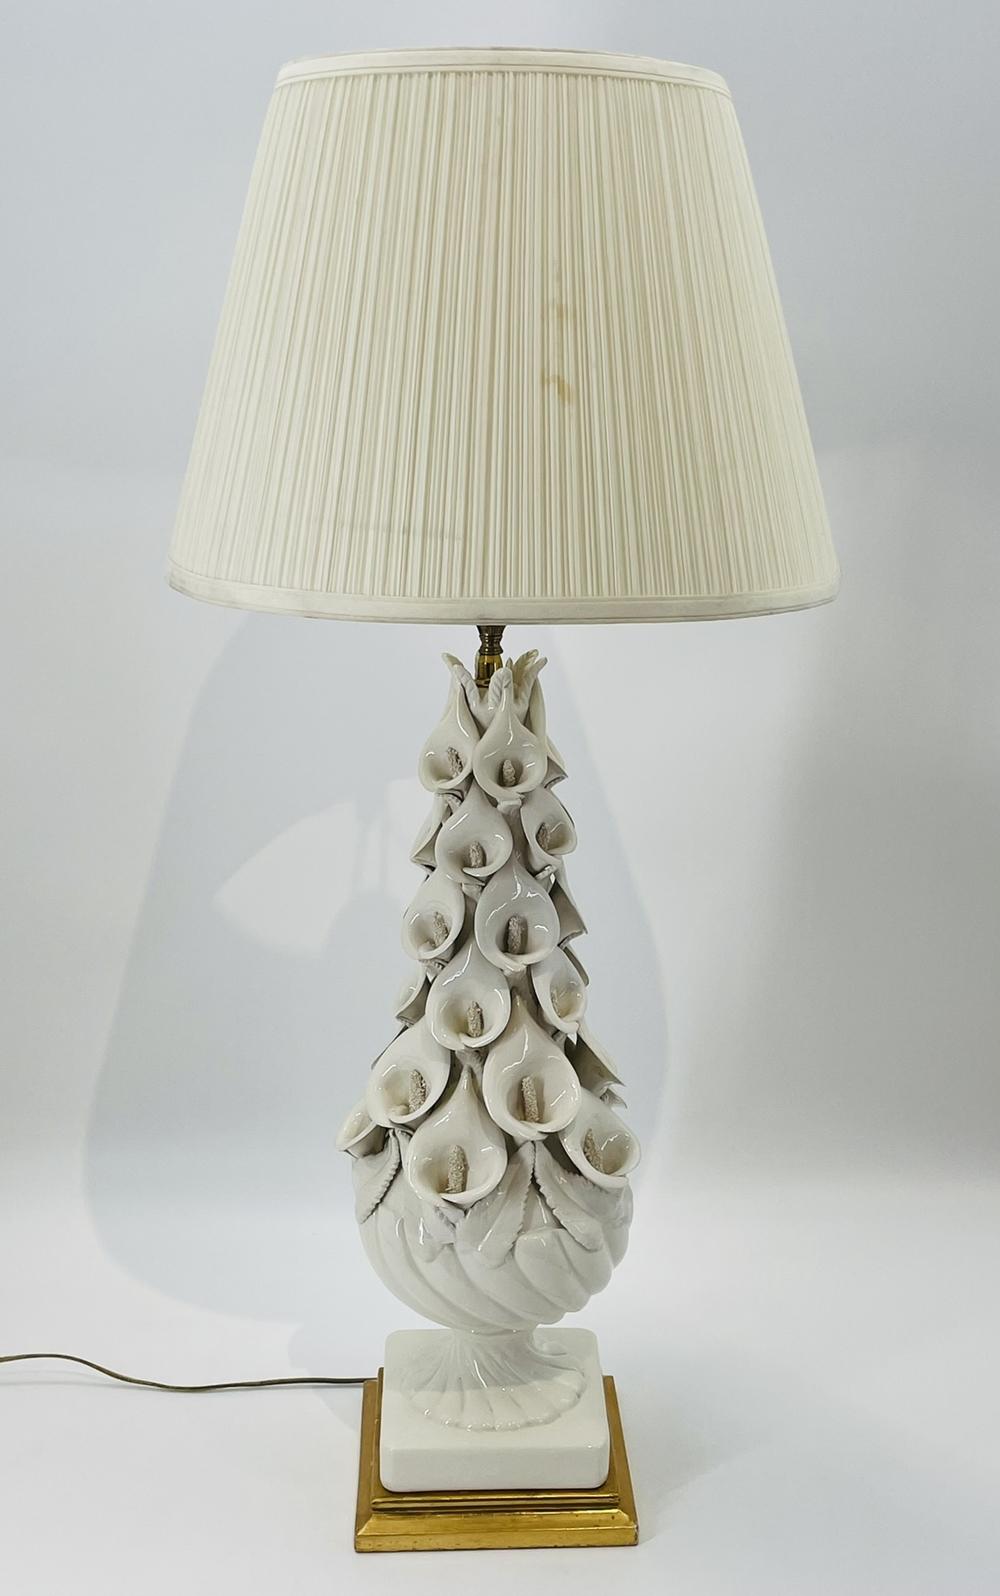 Voici l'exquise lampe de table Calla Lily, une pièce intemporelle fabriquée par Bondia/Manises en Espagne dans les années 1960. 
Cette lampe élégante présente une base blanche épurée, ornée d'un délicat motif floral, exhalant une touche de grâce et